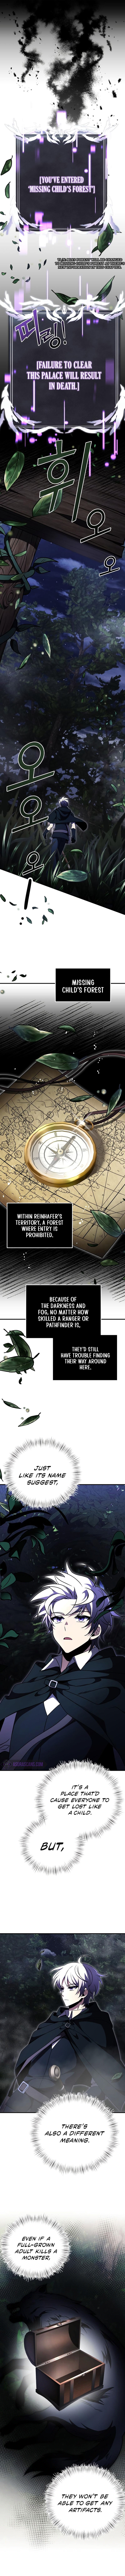 Terminally-Ill Genius Dark Knight Chapter 11 page 2